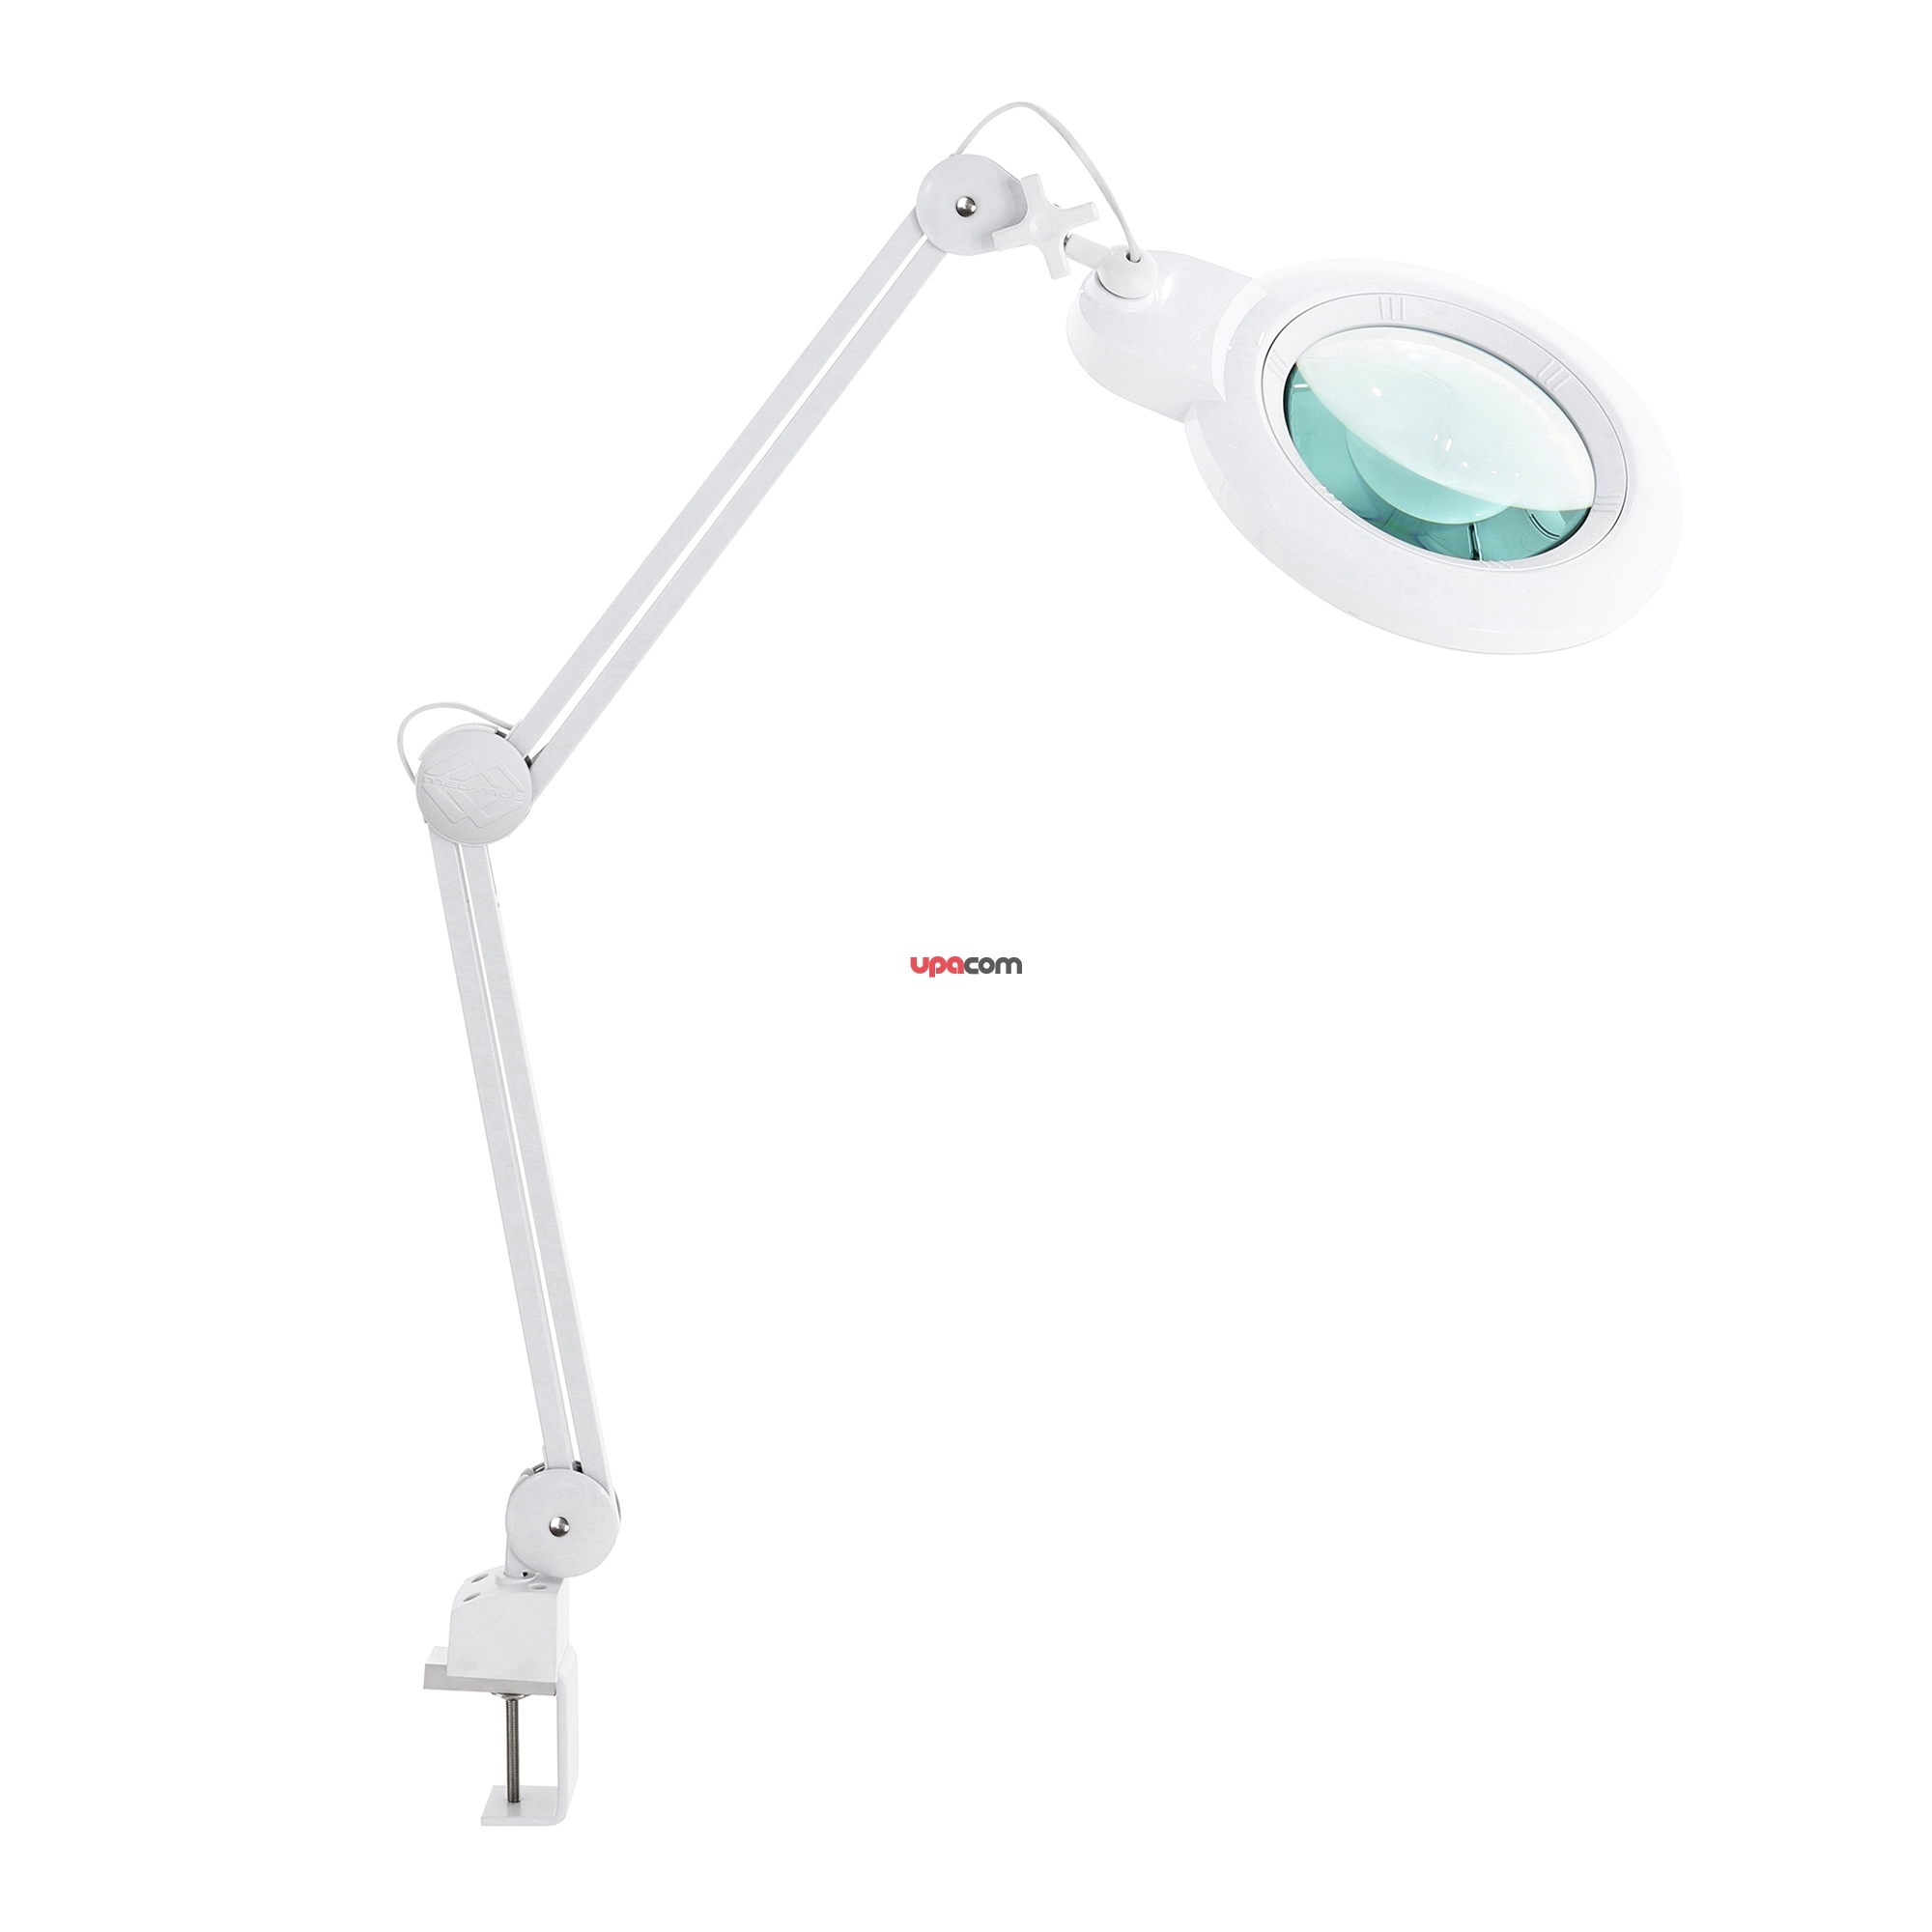 Лампа бестеневая с РУ (лампа-лупа) Med-Mos 9006LED (9006LED-D-178)